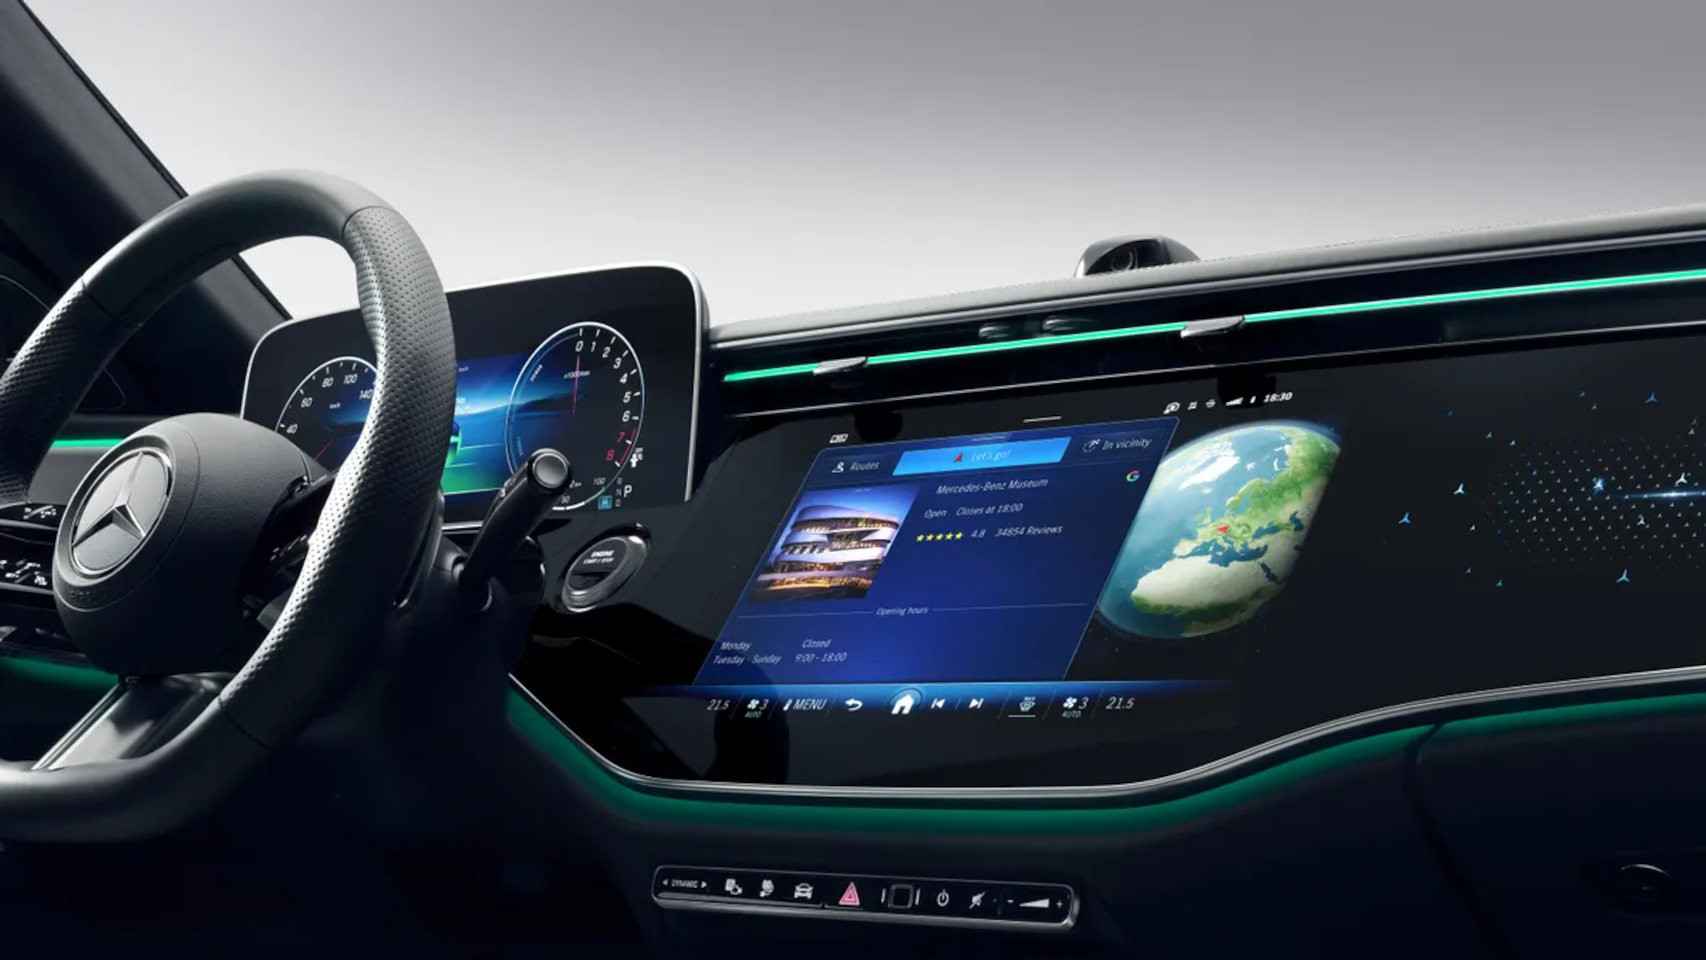 Apps de Google como Maps y YouTube estarán integradas en los sistemas de Mercedes-Benz